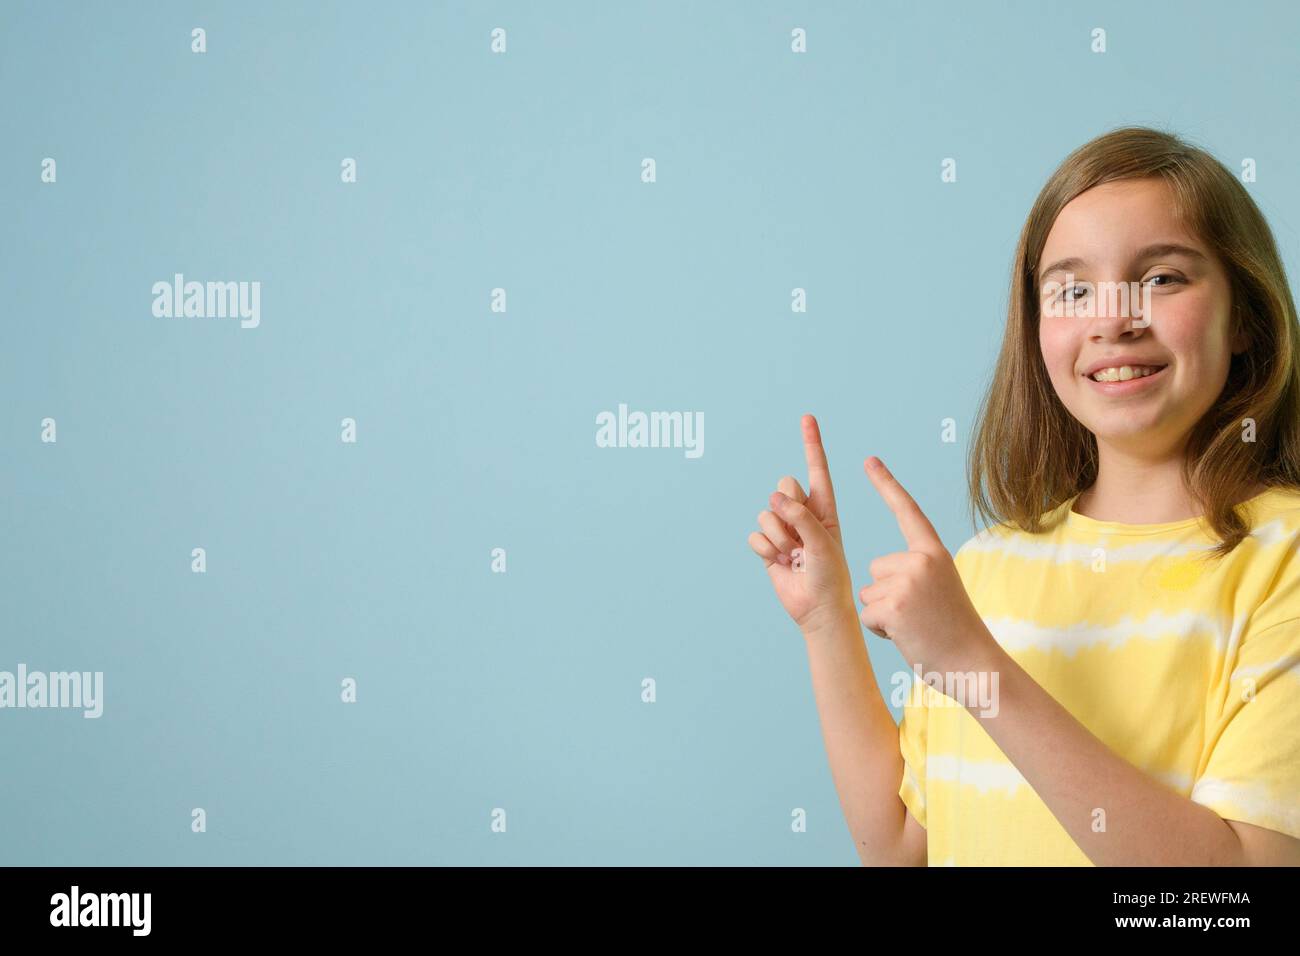 Une adolescente suggère de regarder l'espace libre pour le texte sur la gauche. Pointe les doigts vers l'espace de copie. fond vert clair Banque D'Images